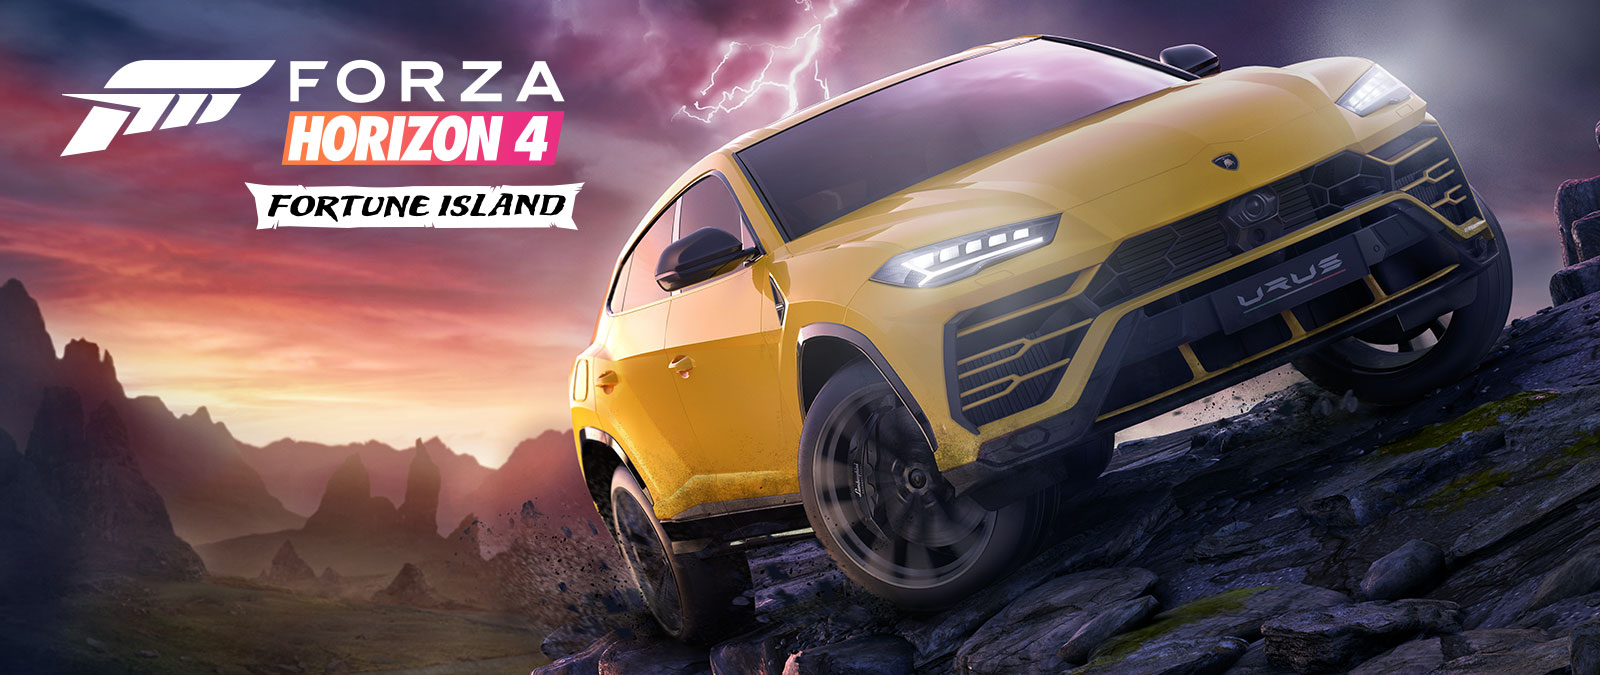 Forza Horizon 4 Fortune Island, ein gelber Lamborghini Urus fährt in tückischem Gelände mit Blitzen im Hintergrund